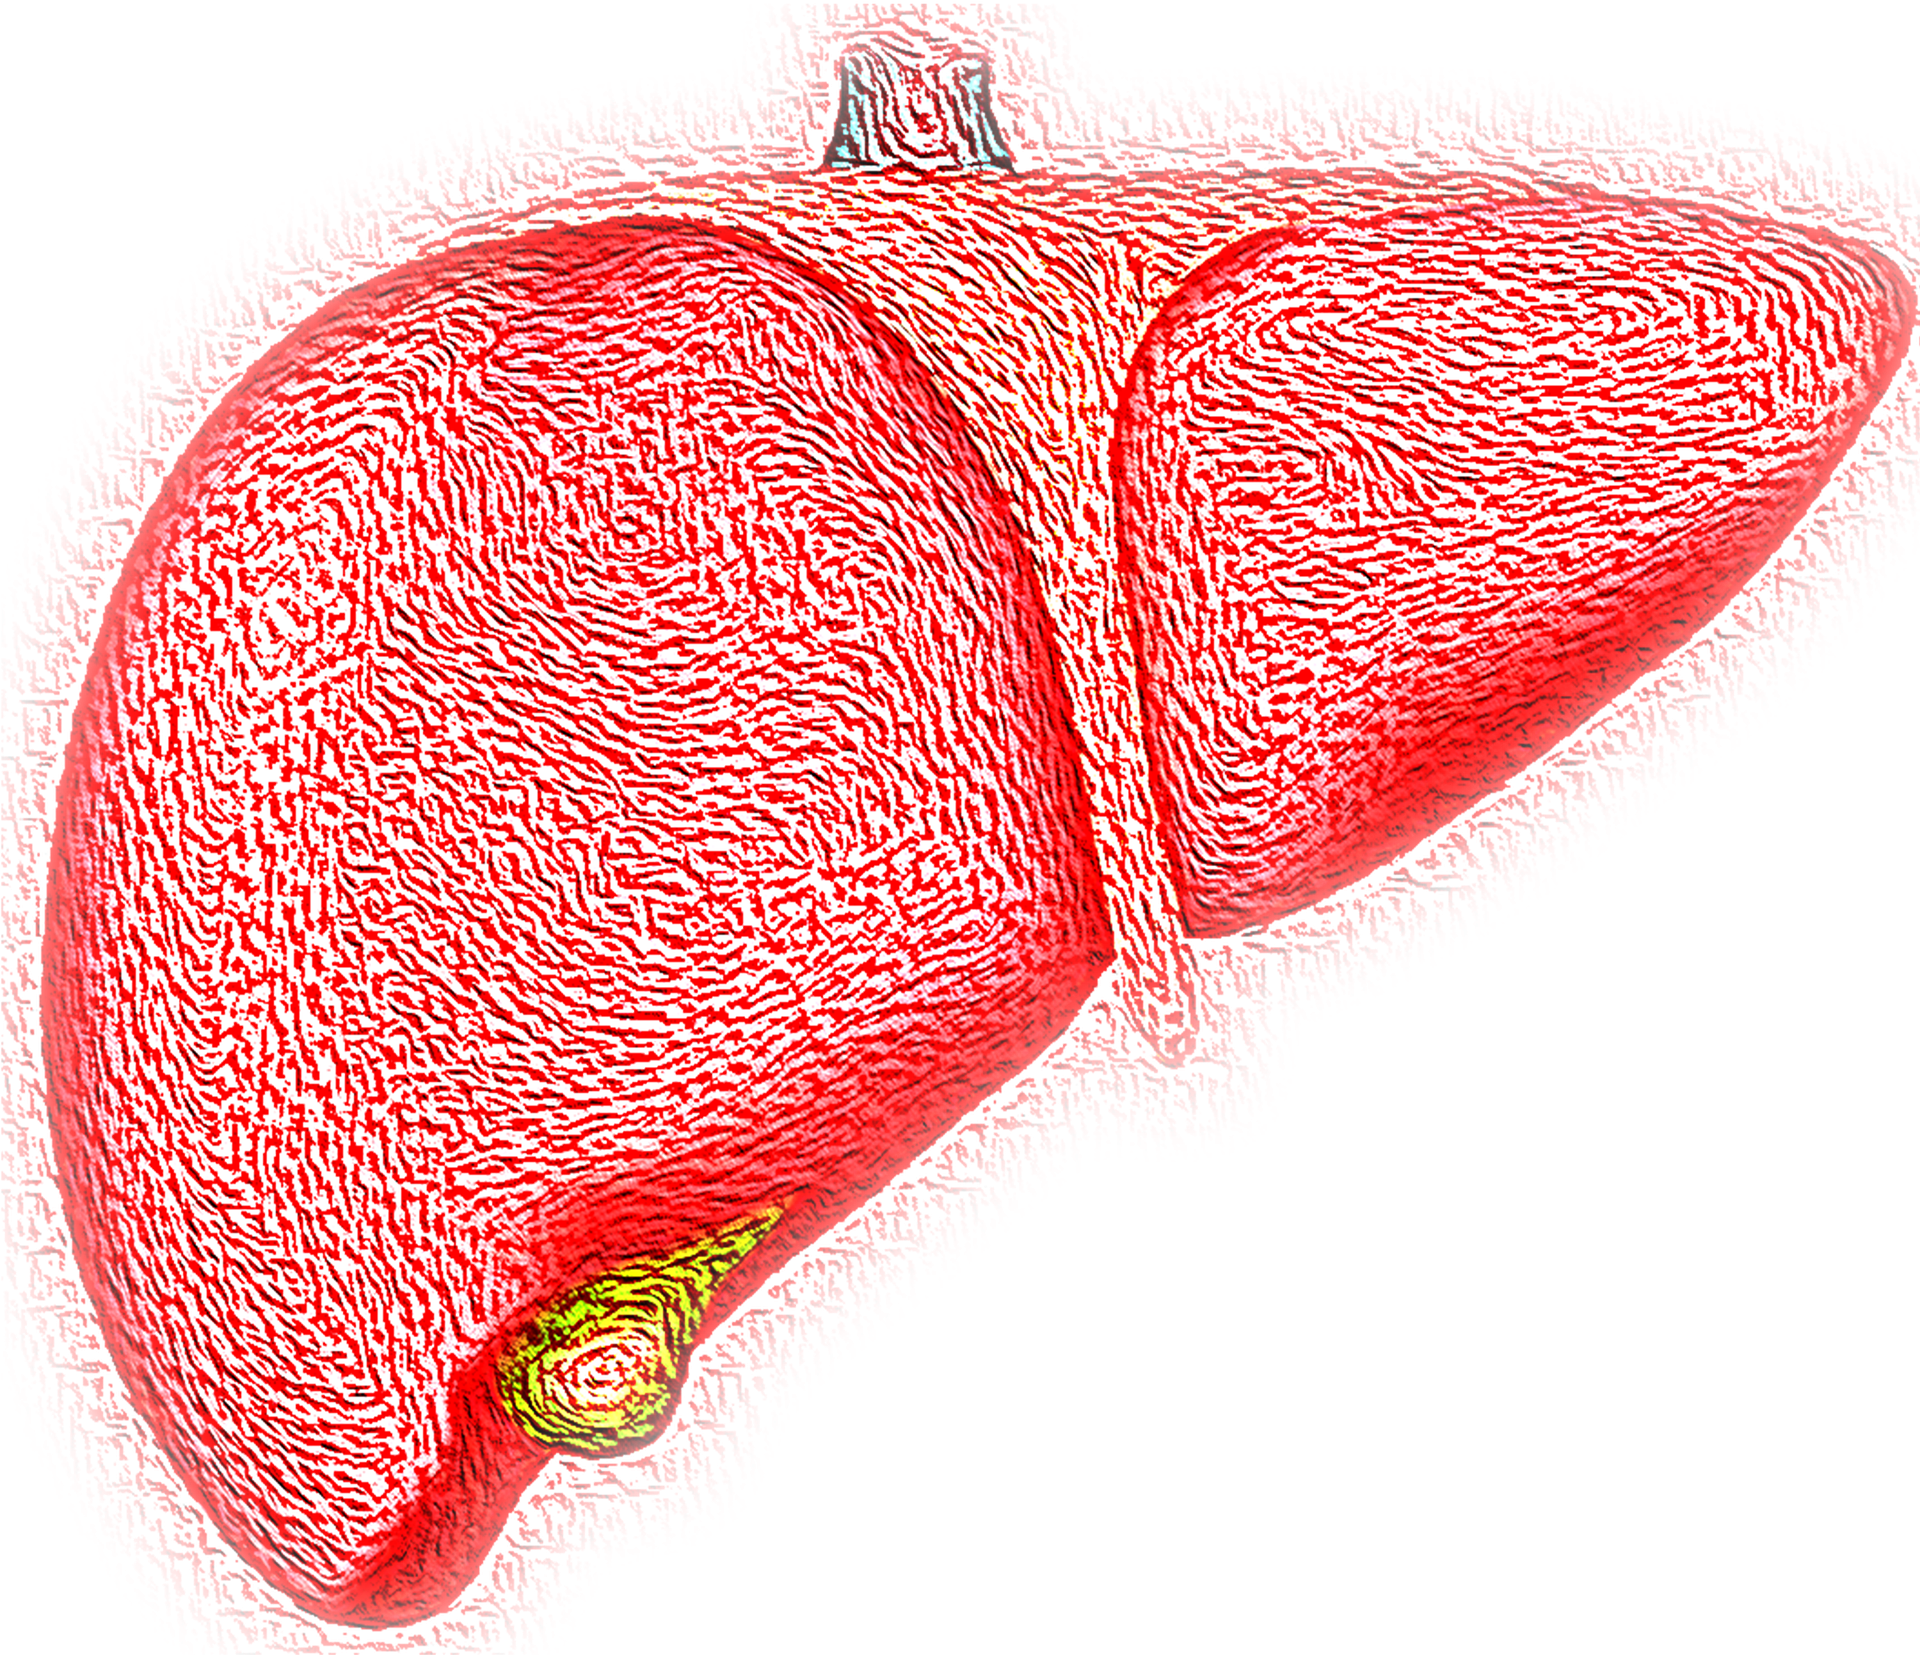 A Close Up Of A Liver